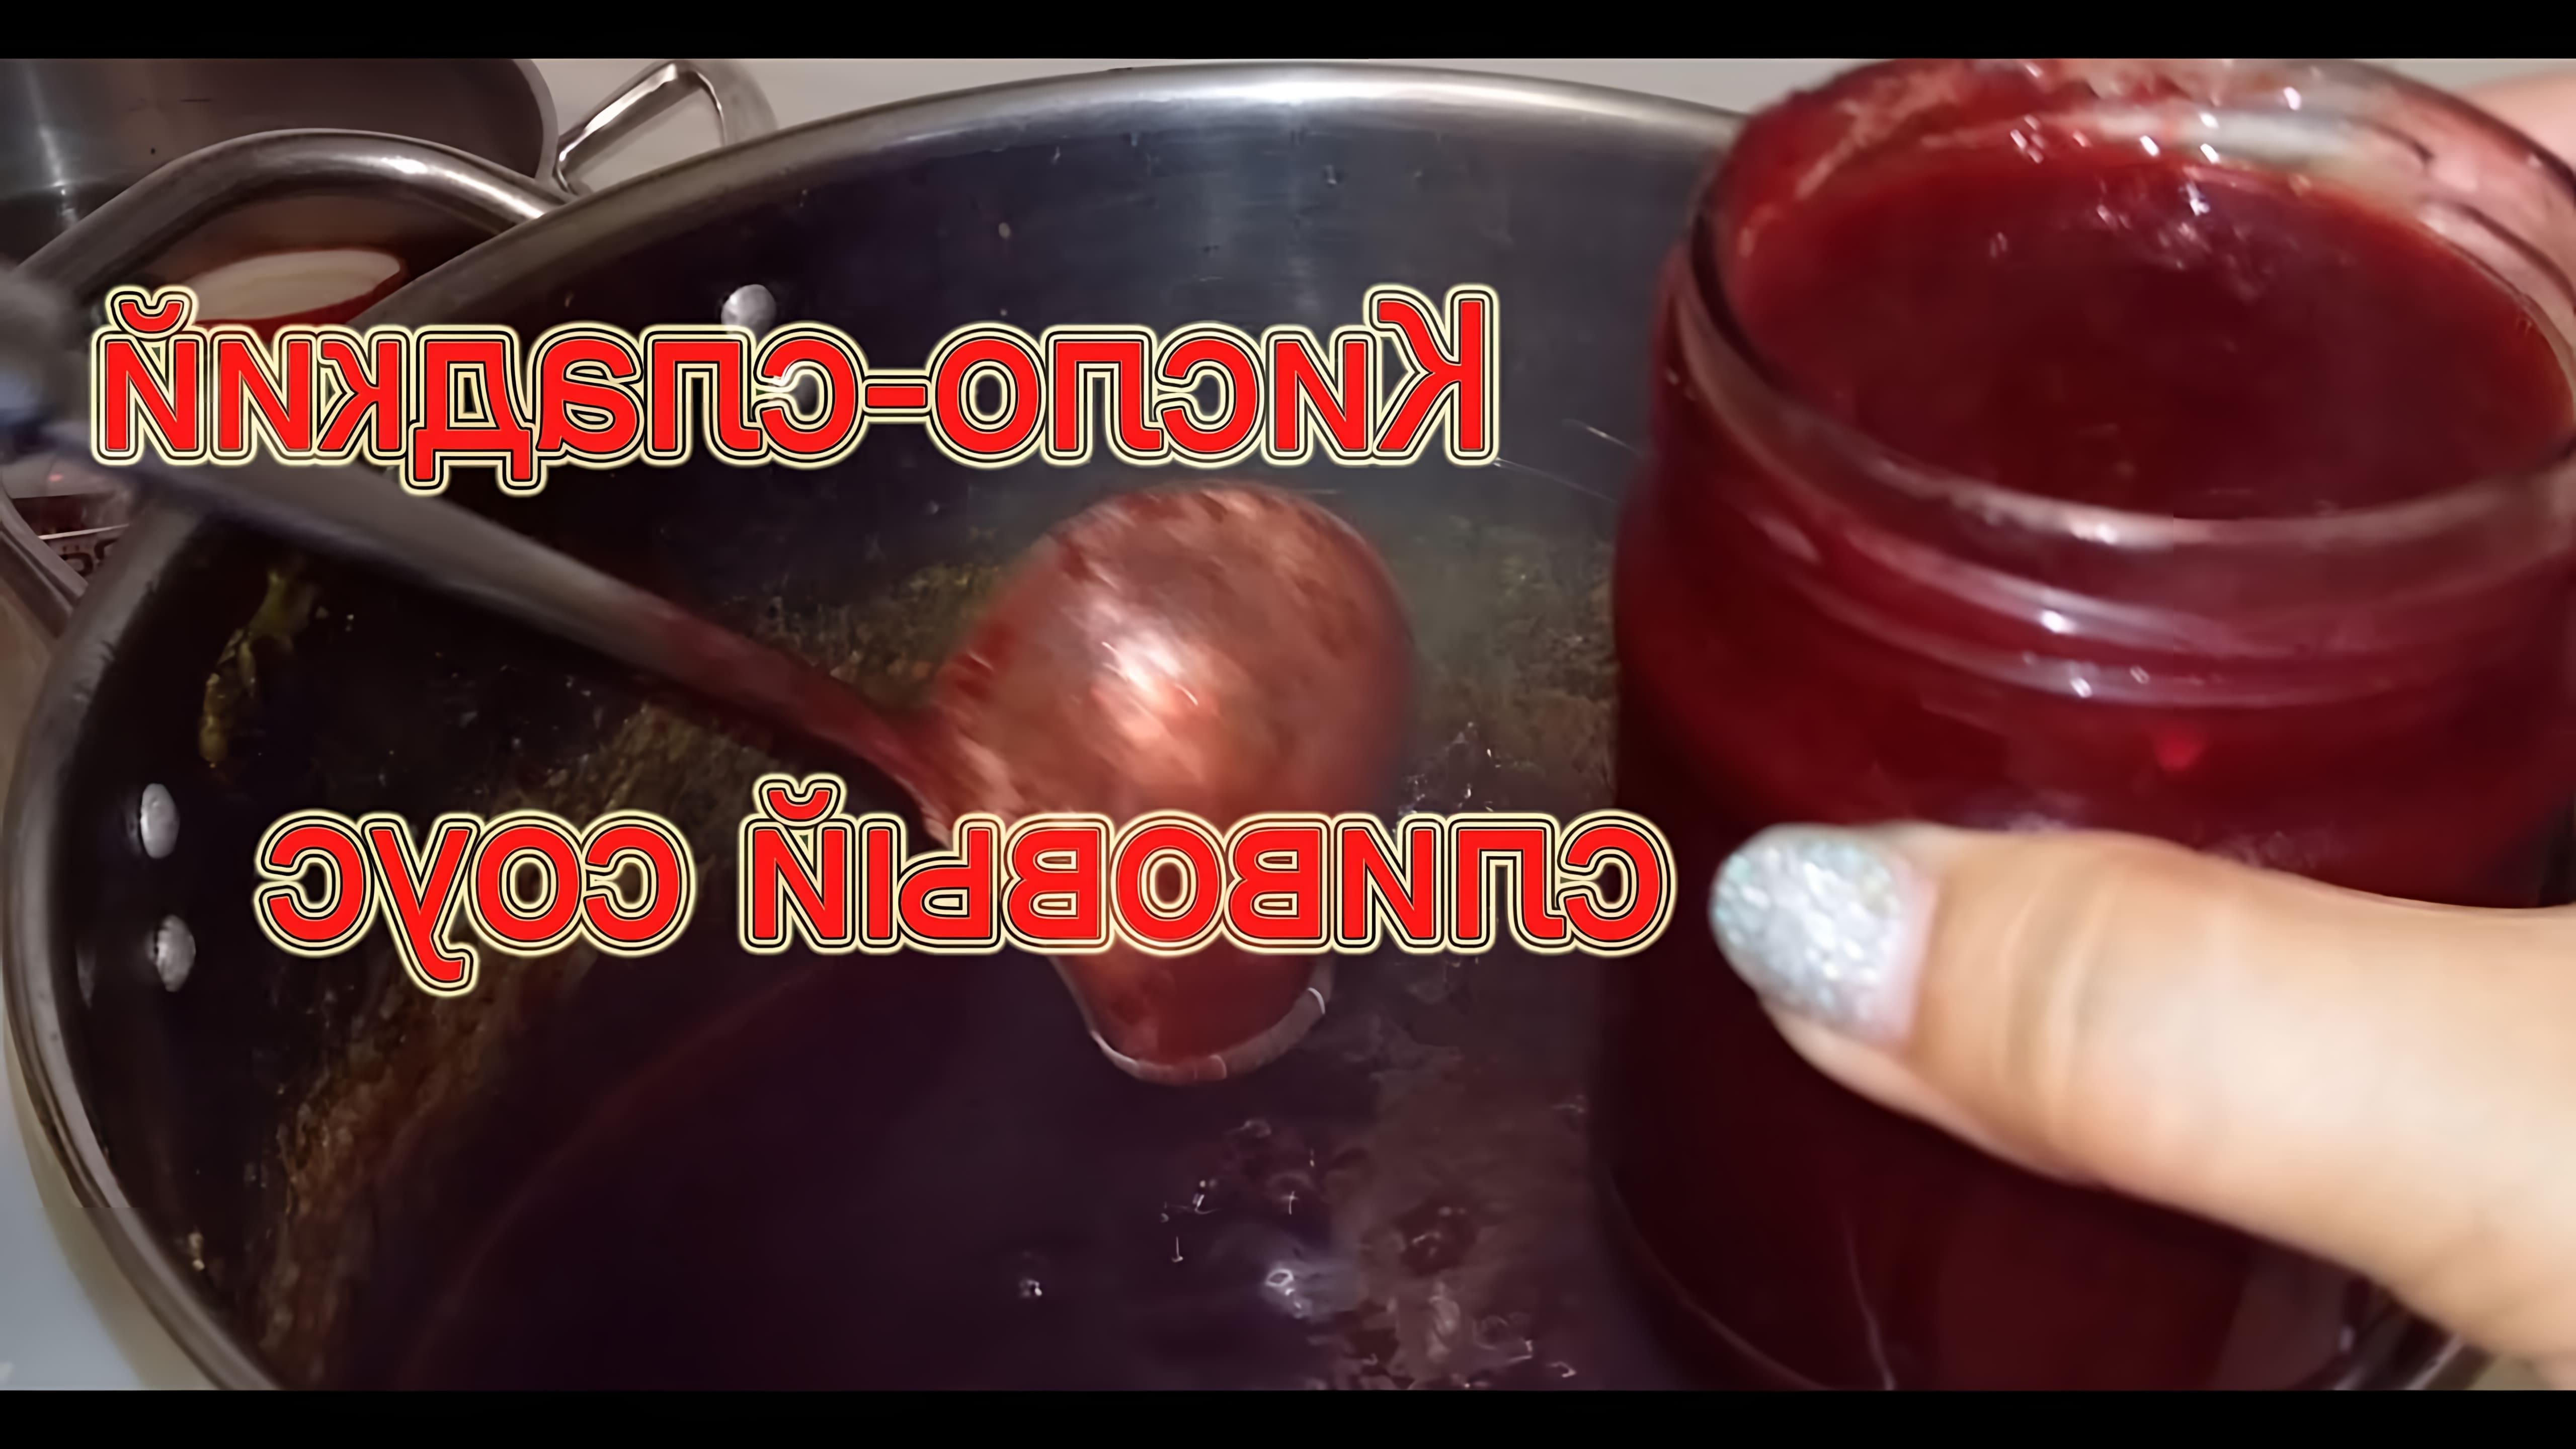 В этом видео-ролике будет показан рецепт приготовления кисло-сладкого соуса из слив